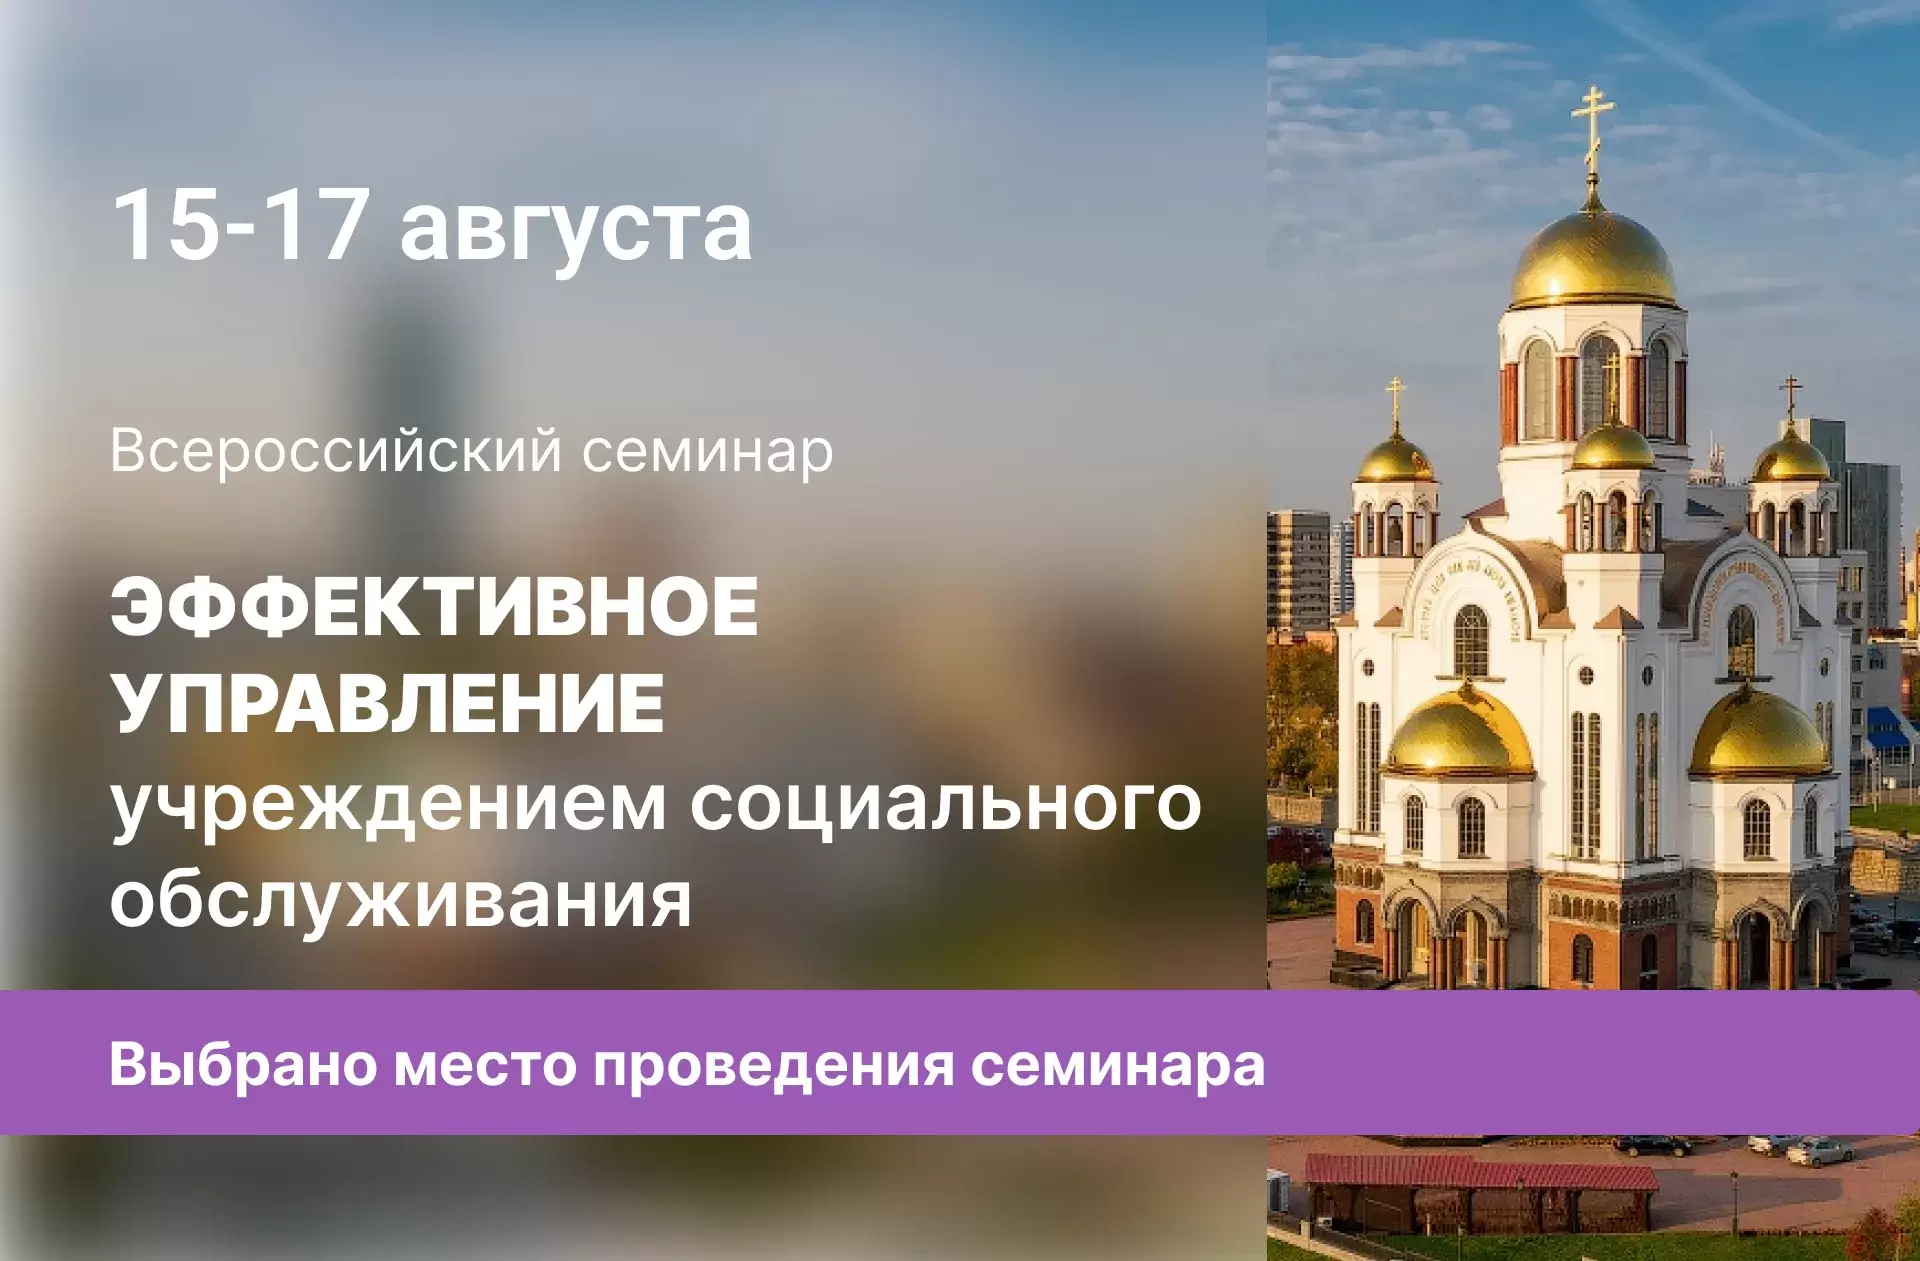 Выбрано место проведения Всероссийского семинара «Эффективное управление учреждением социального обслуживания»